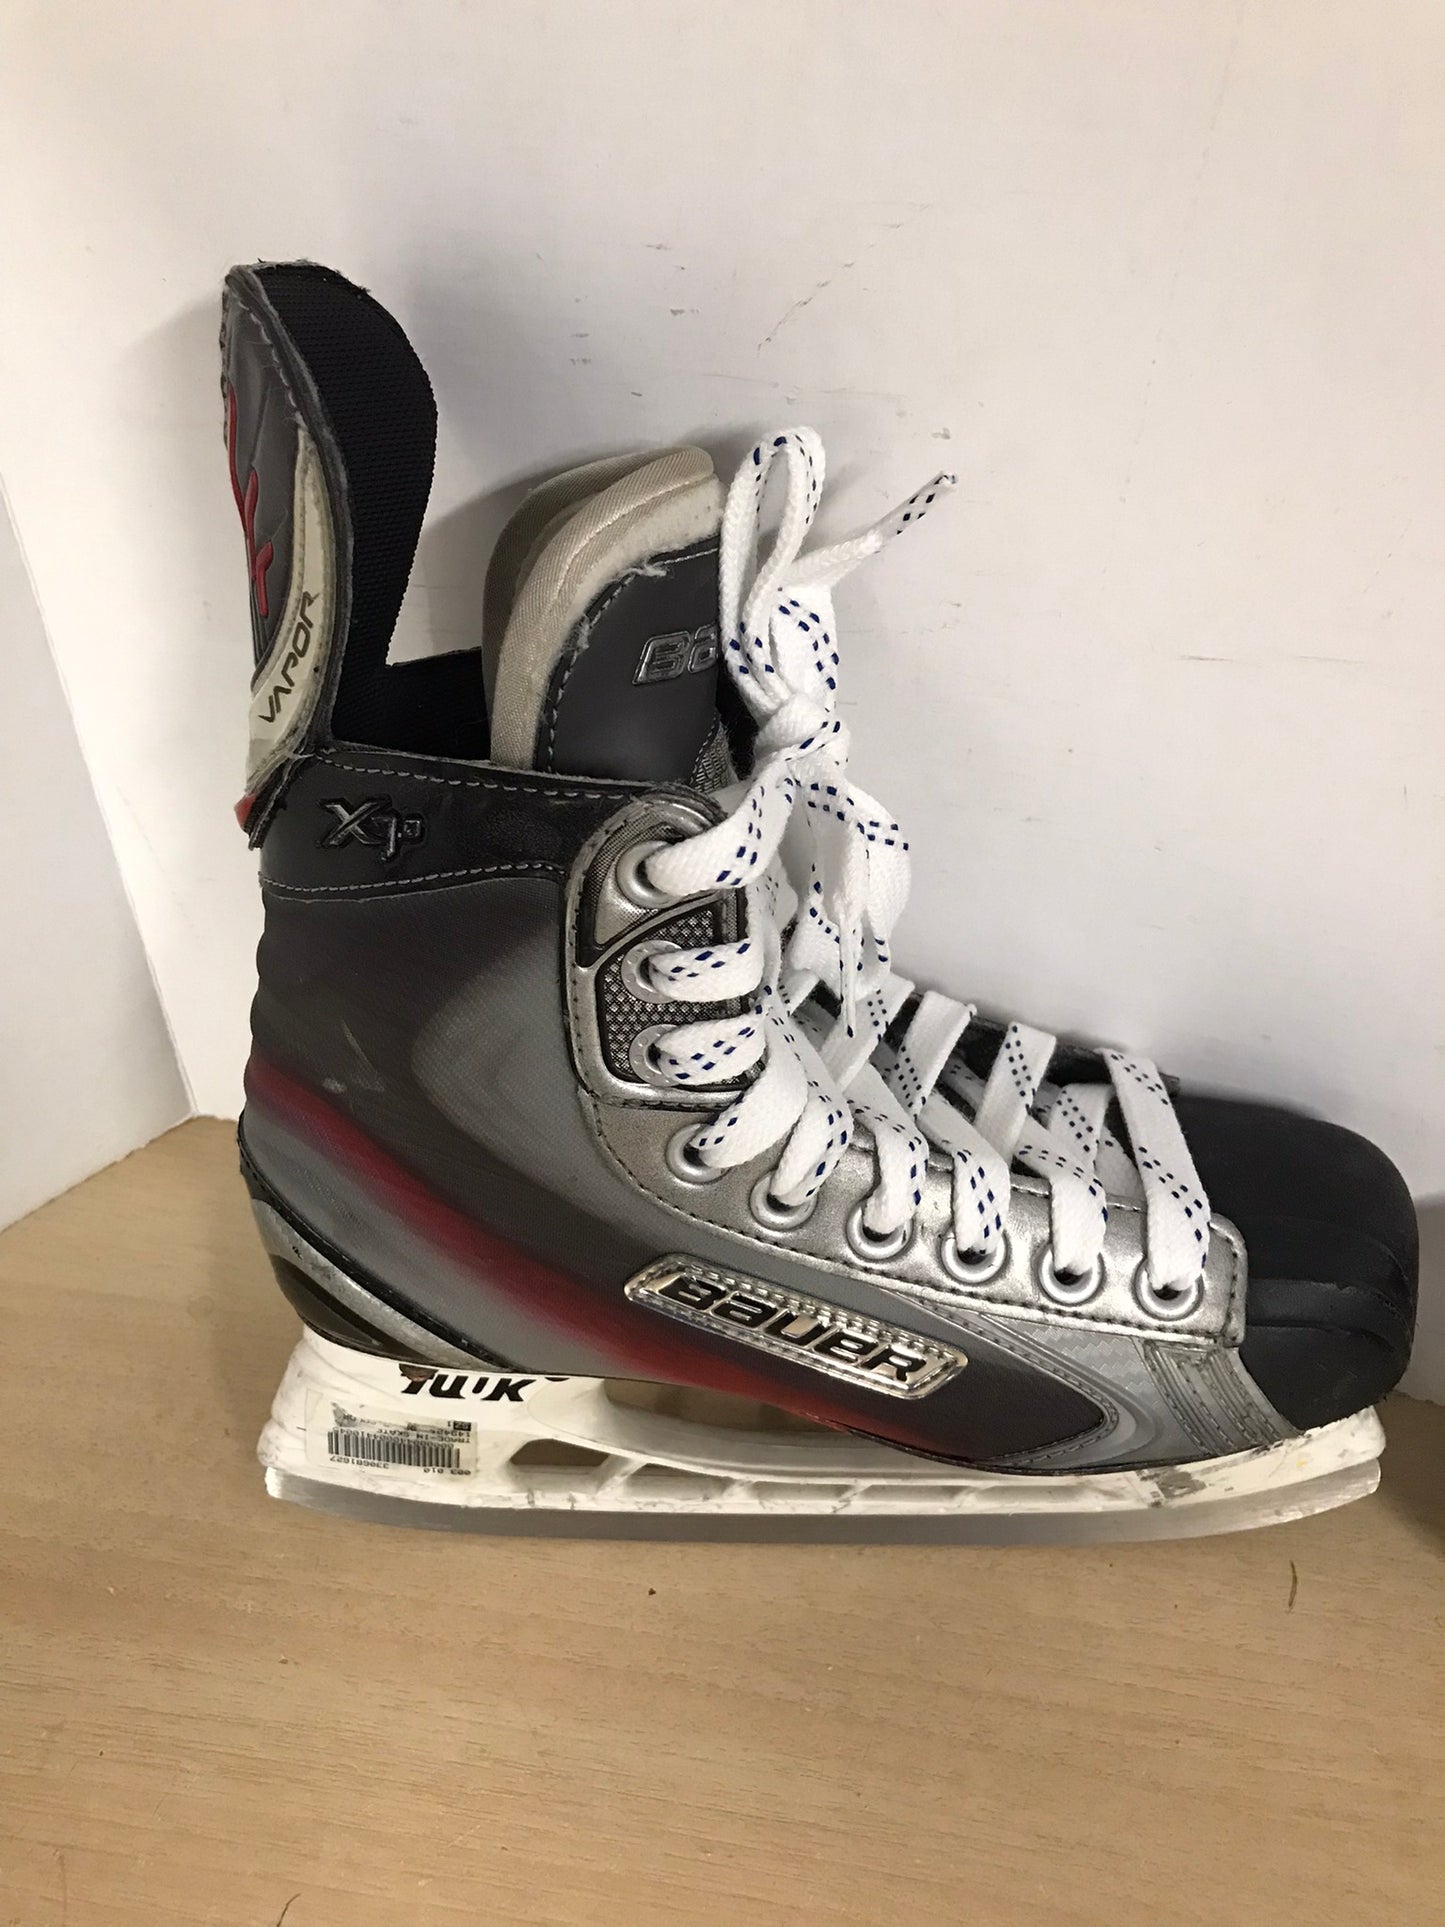 Hockey Skates Child Size 4 Shoe Size Bauer Vapor X7.0